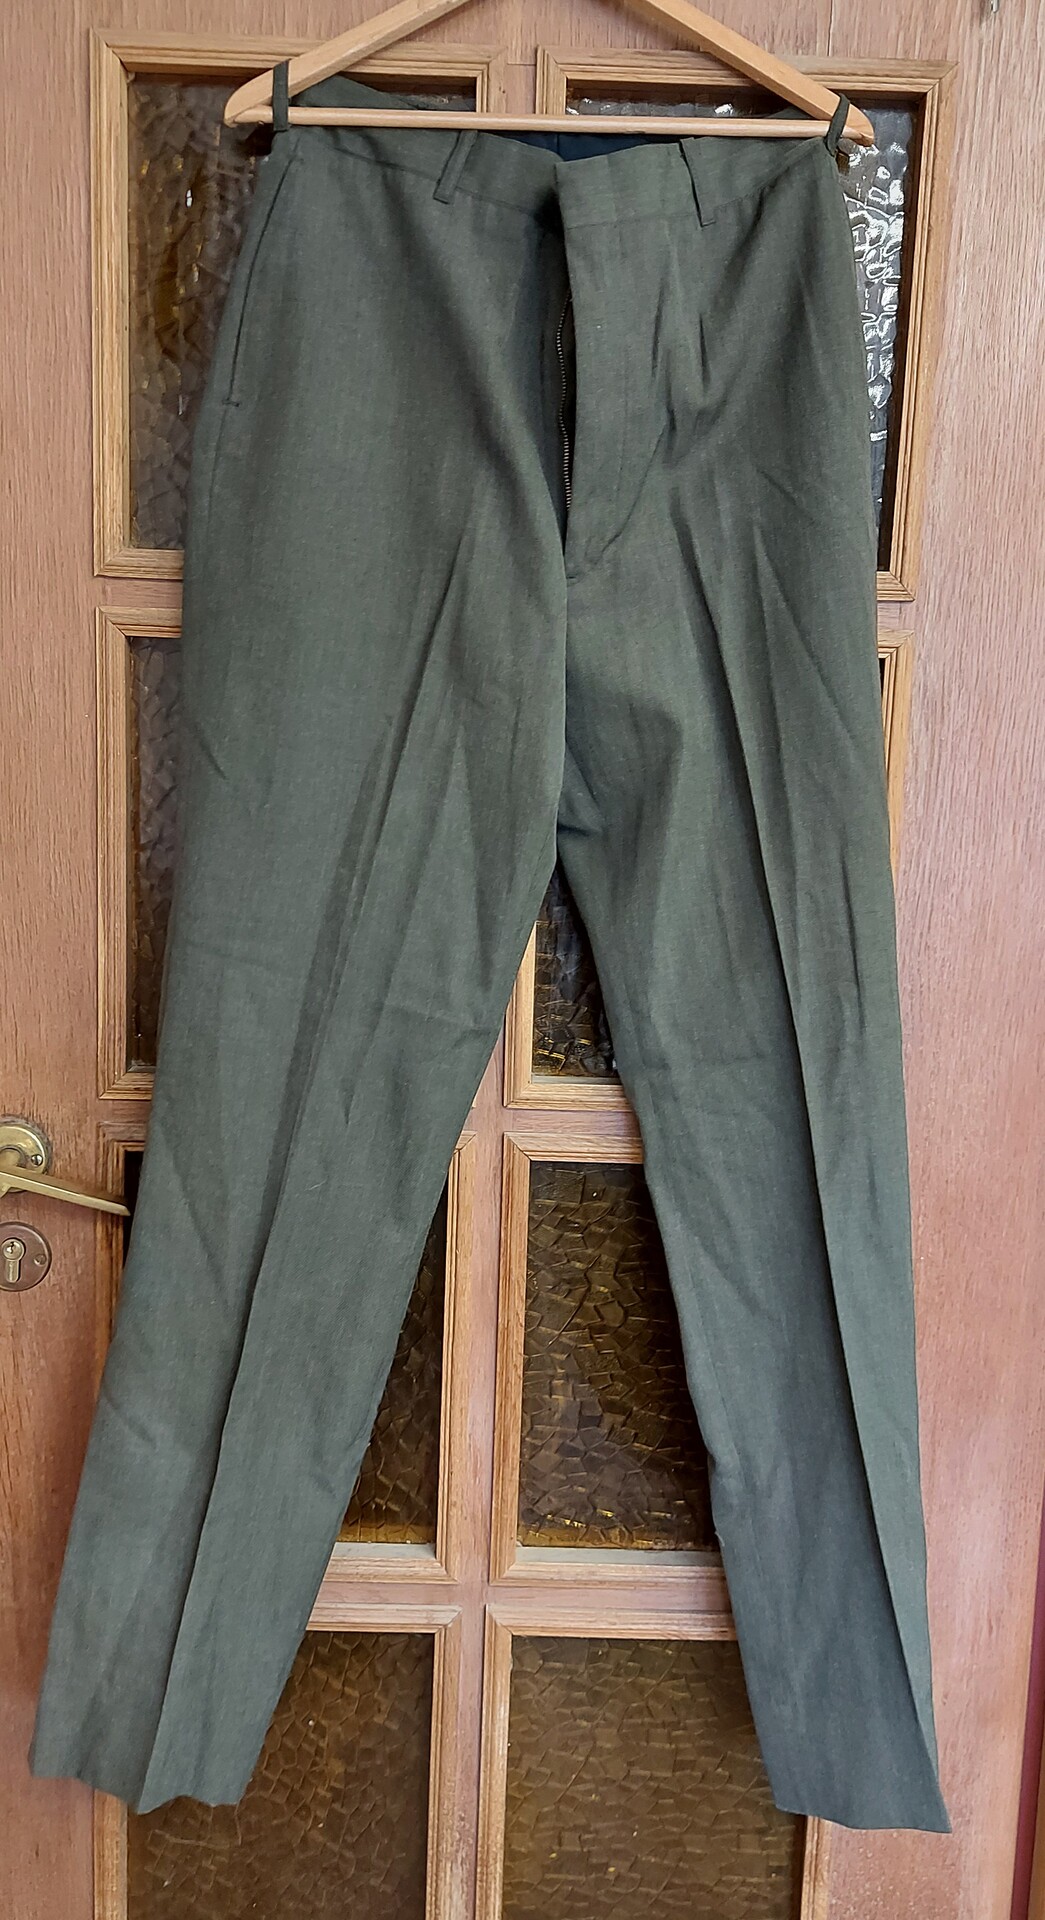 Spodnie Munduru wyjsciowego USMC - Zielone - 33R